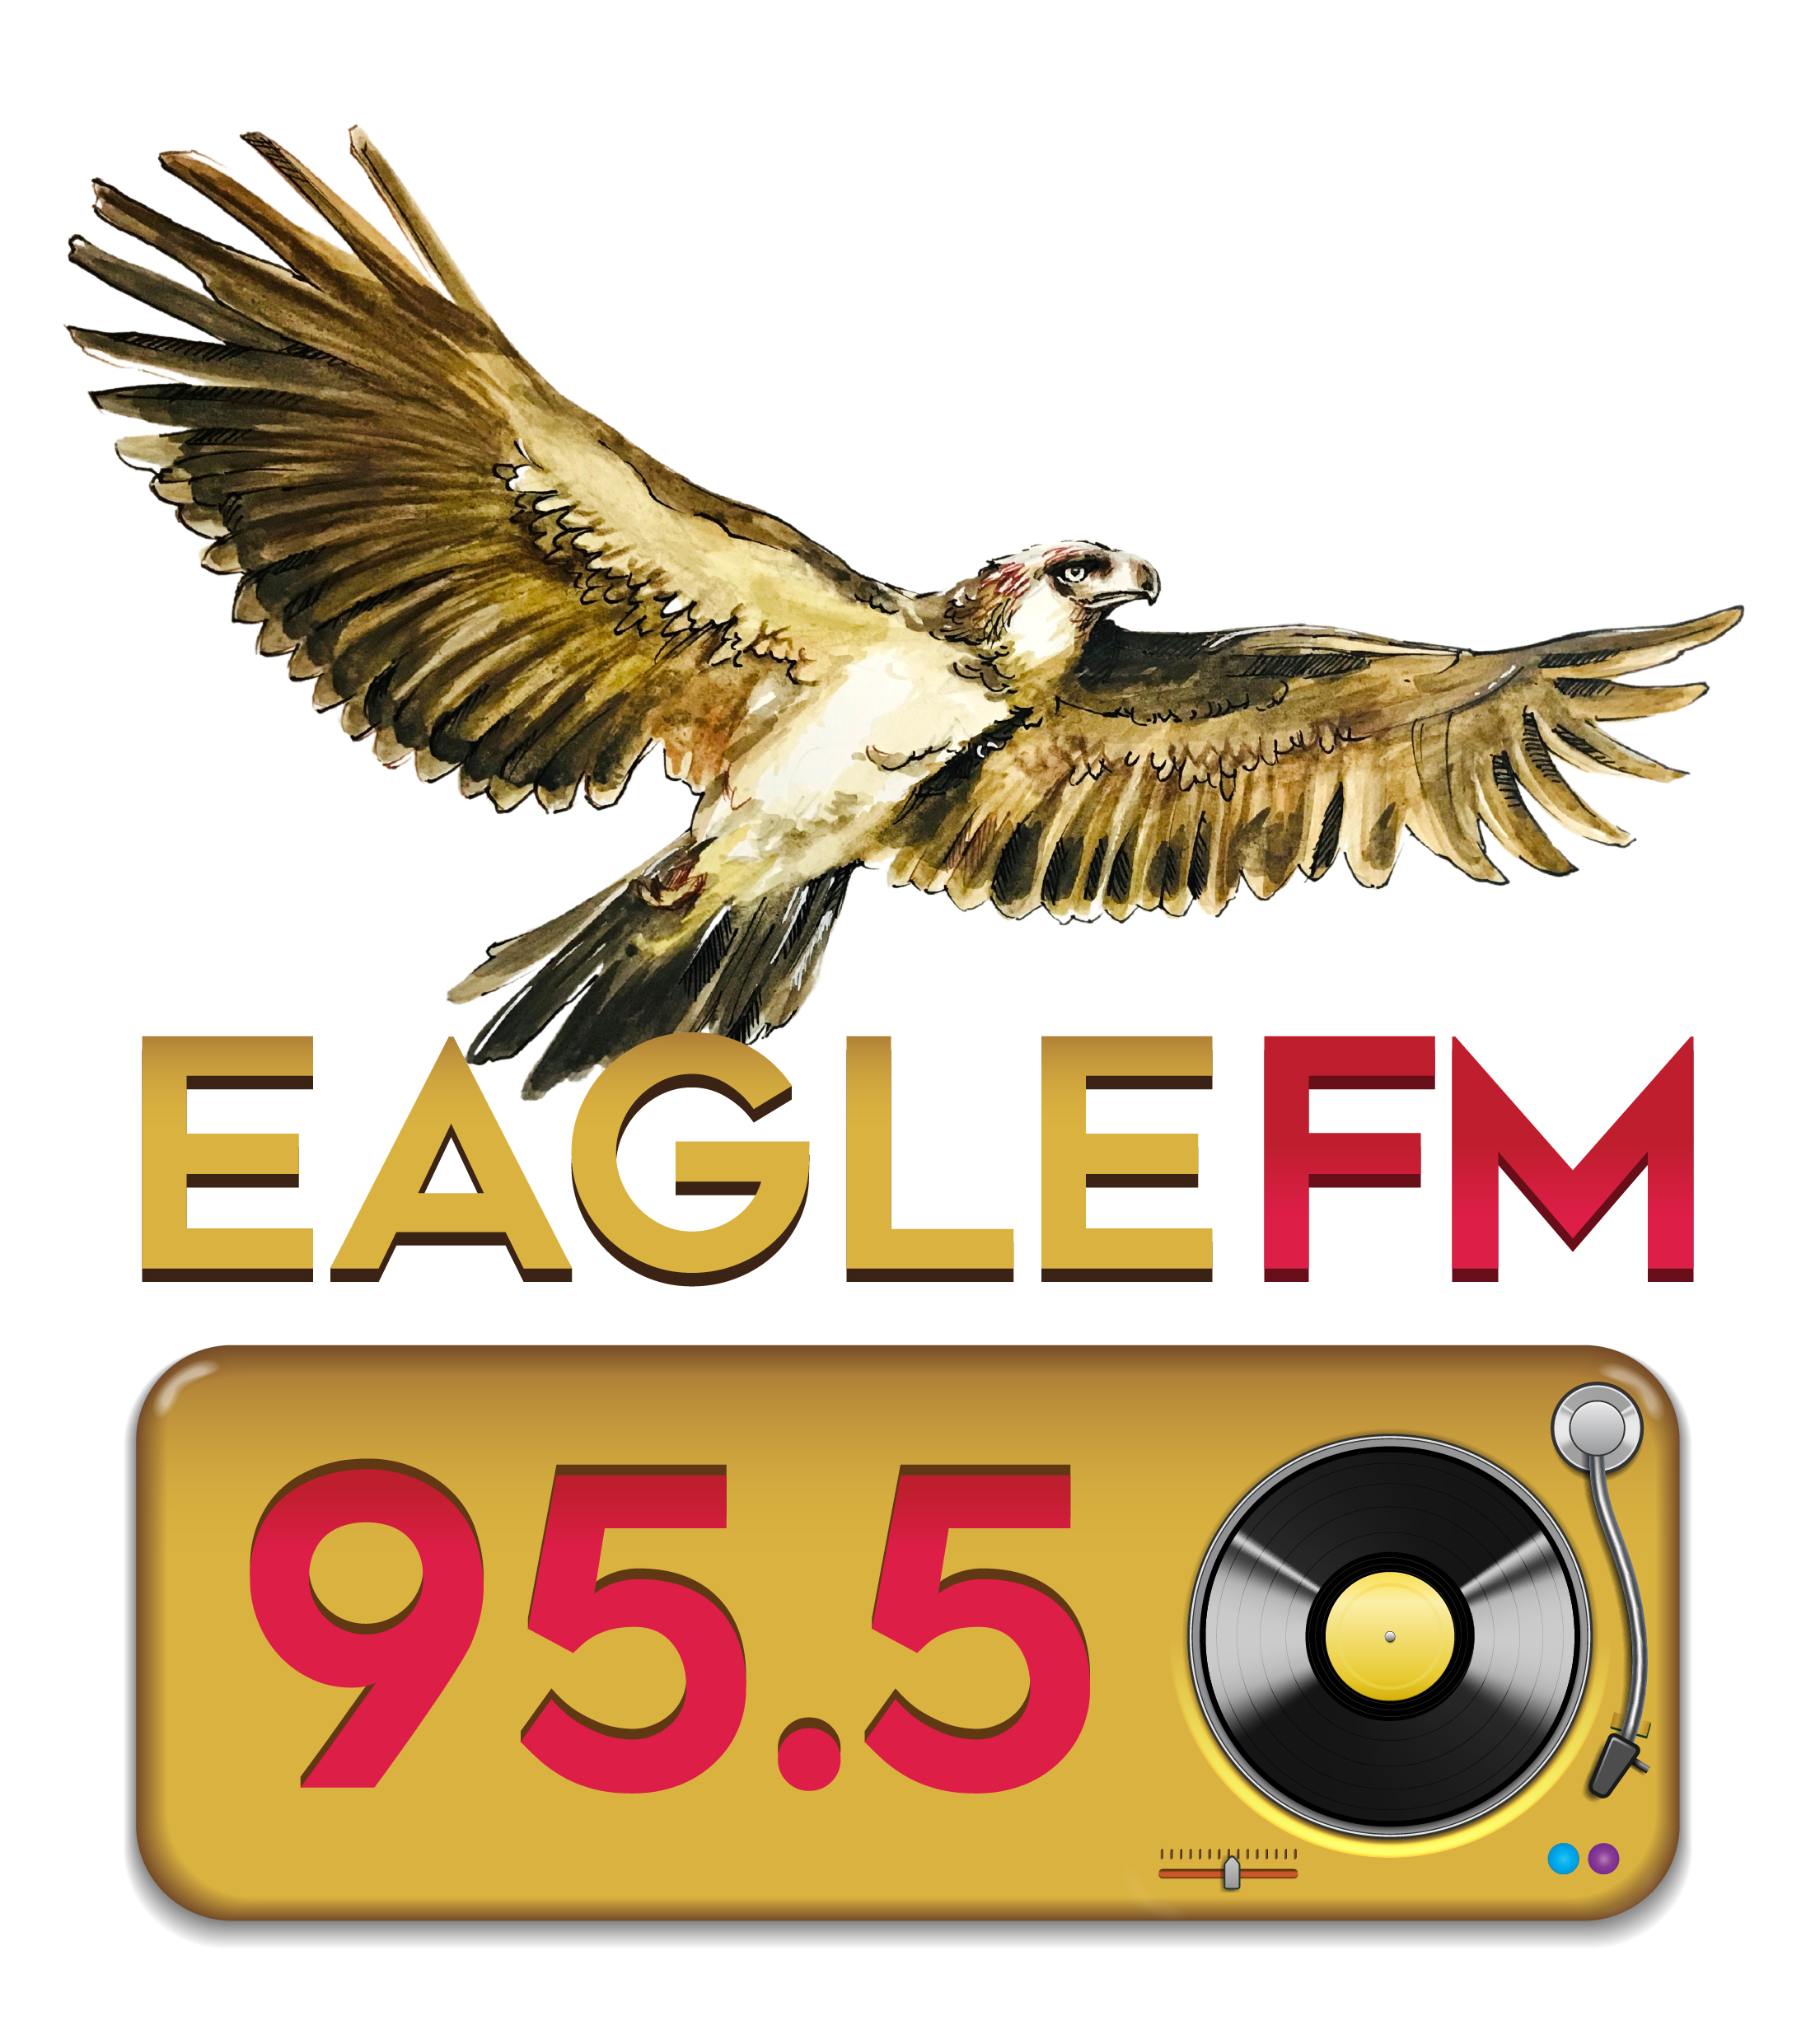 eagle-fm-95.5-logo-2021